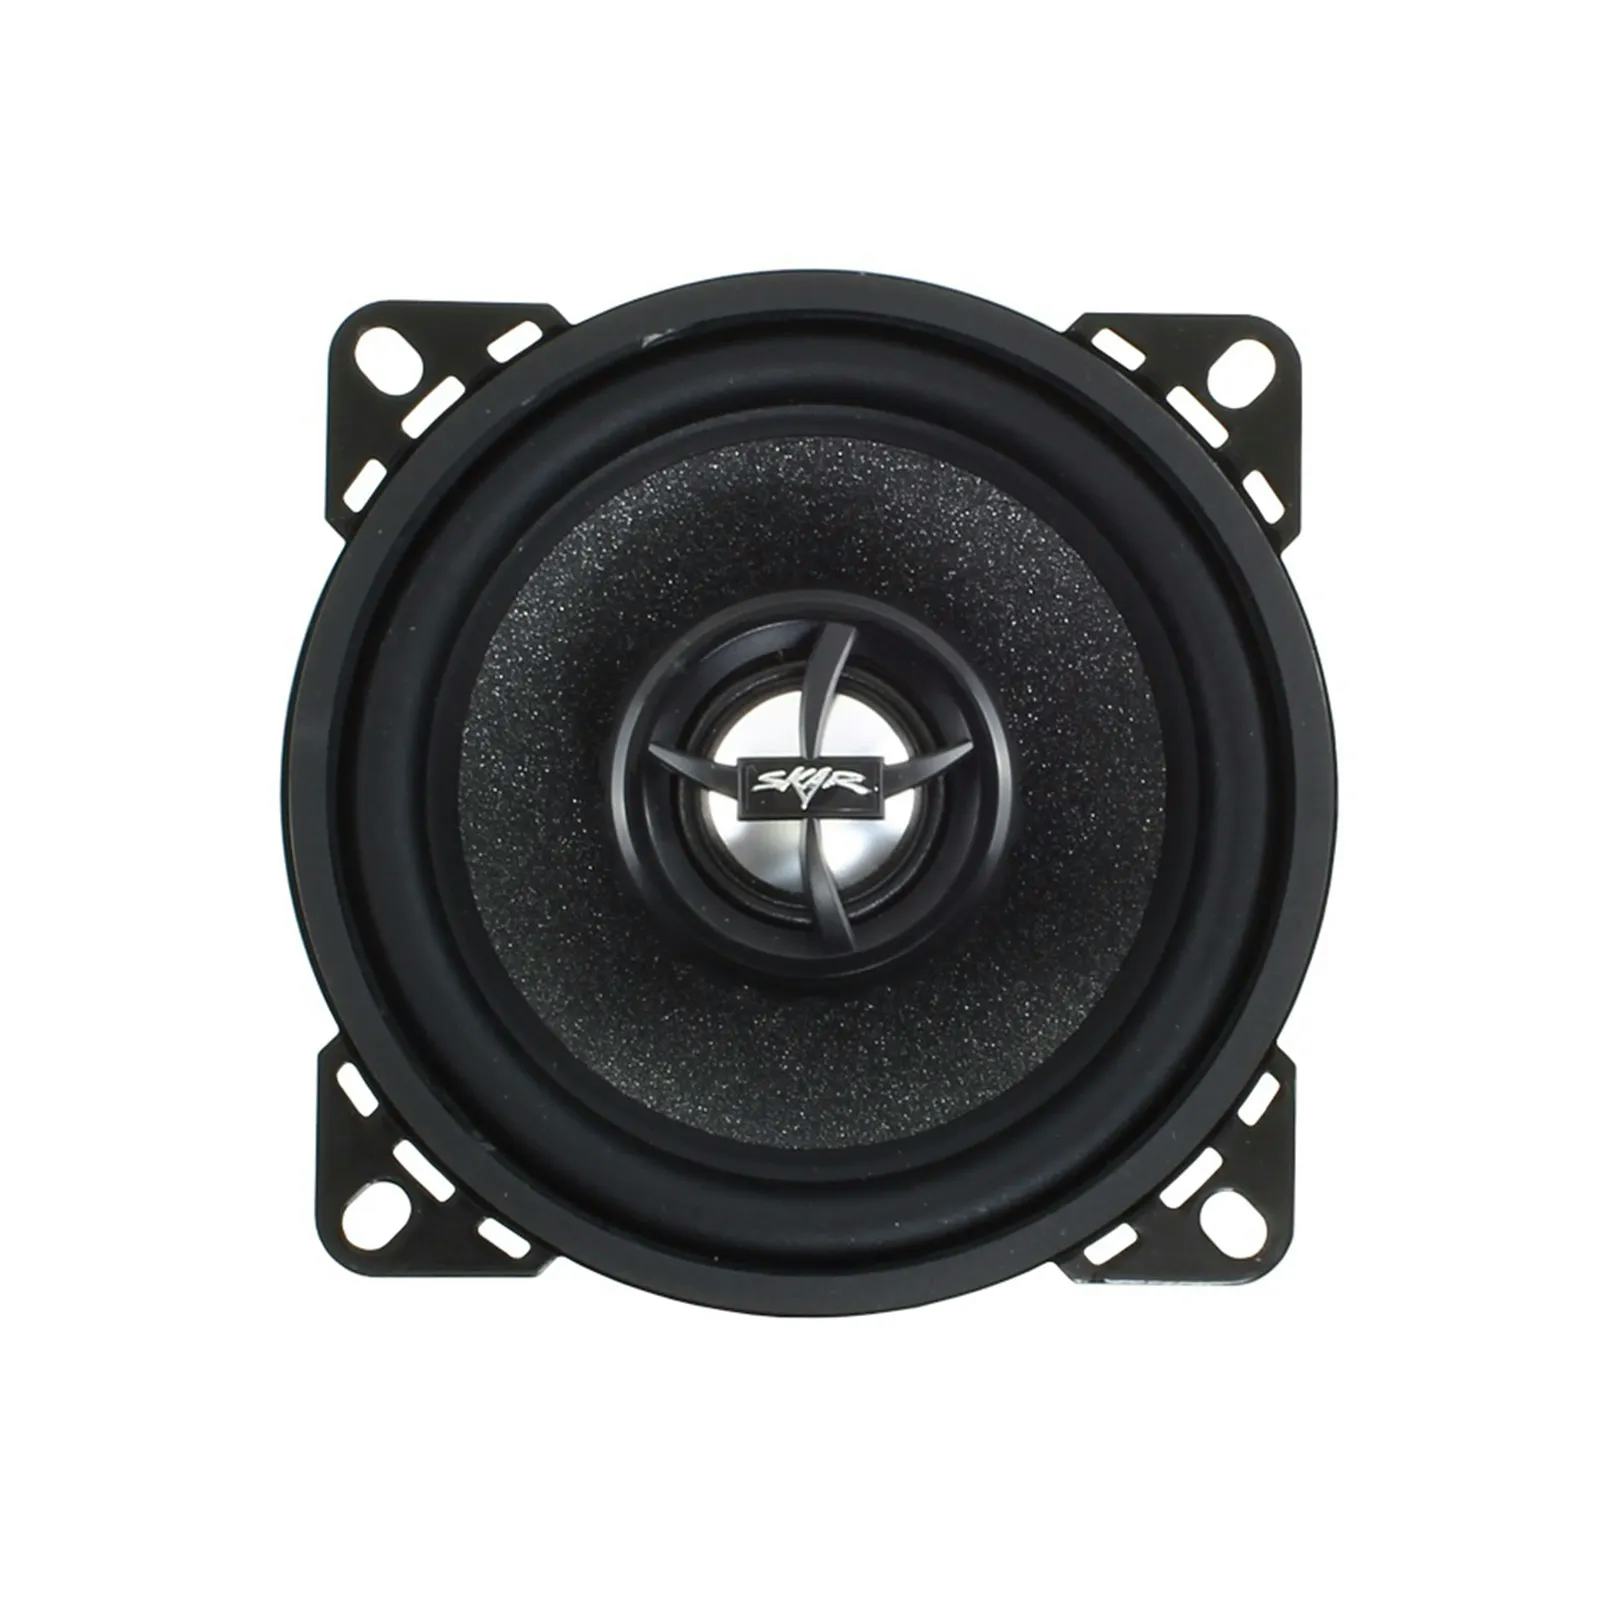 RPX4 | 4" 120 Watt Coaxial Car Speakers - Pair #4